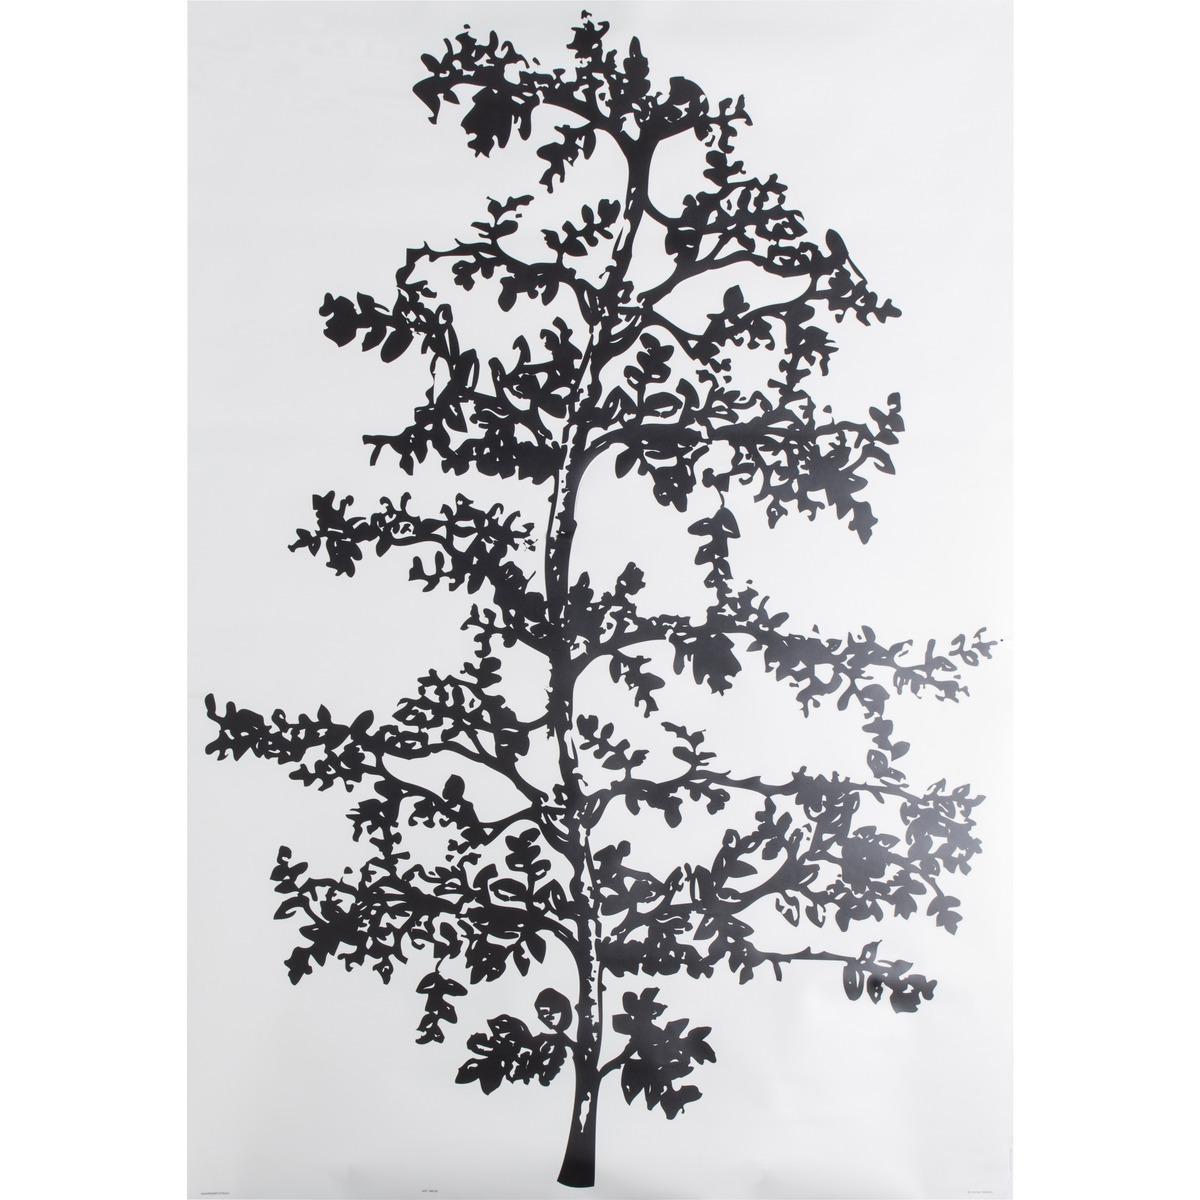 Sticker adhésif déco arbre tropical - 100 x 70 cm - Noir